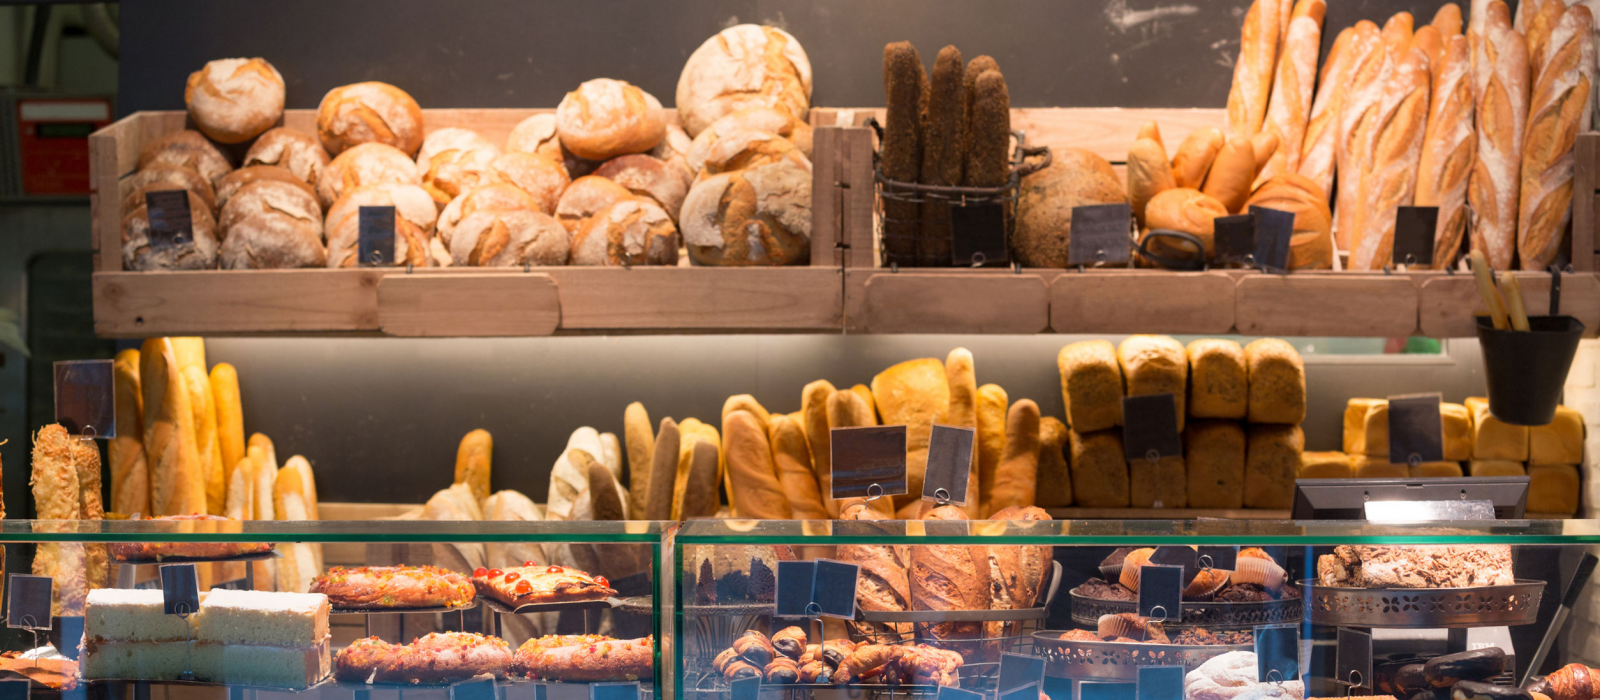 Les meilleures boulangeries de France 2019